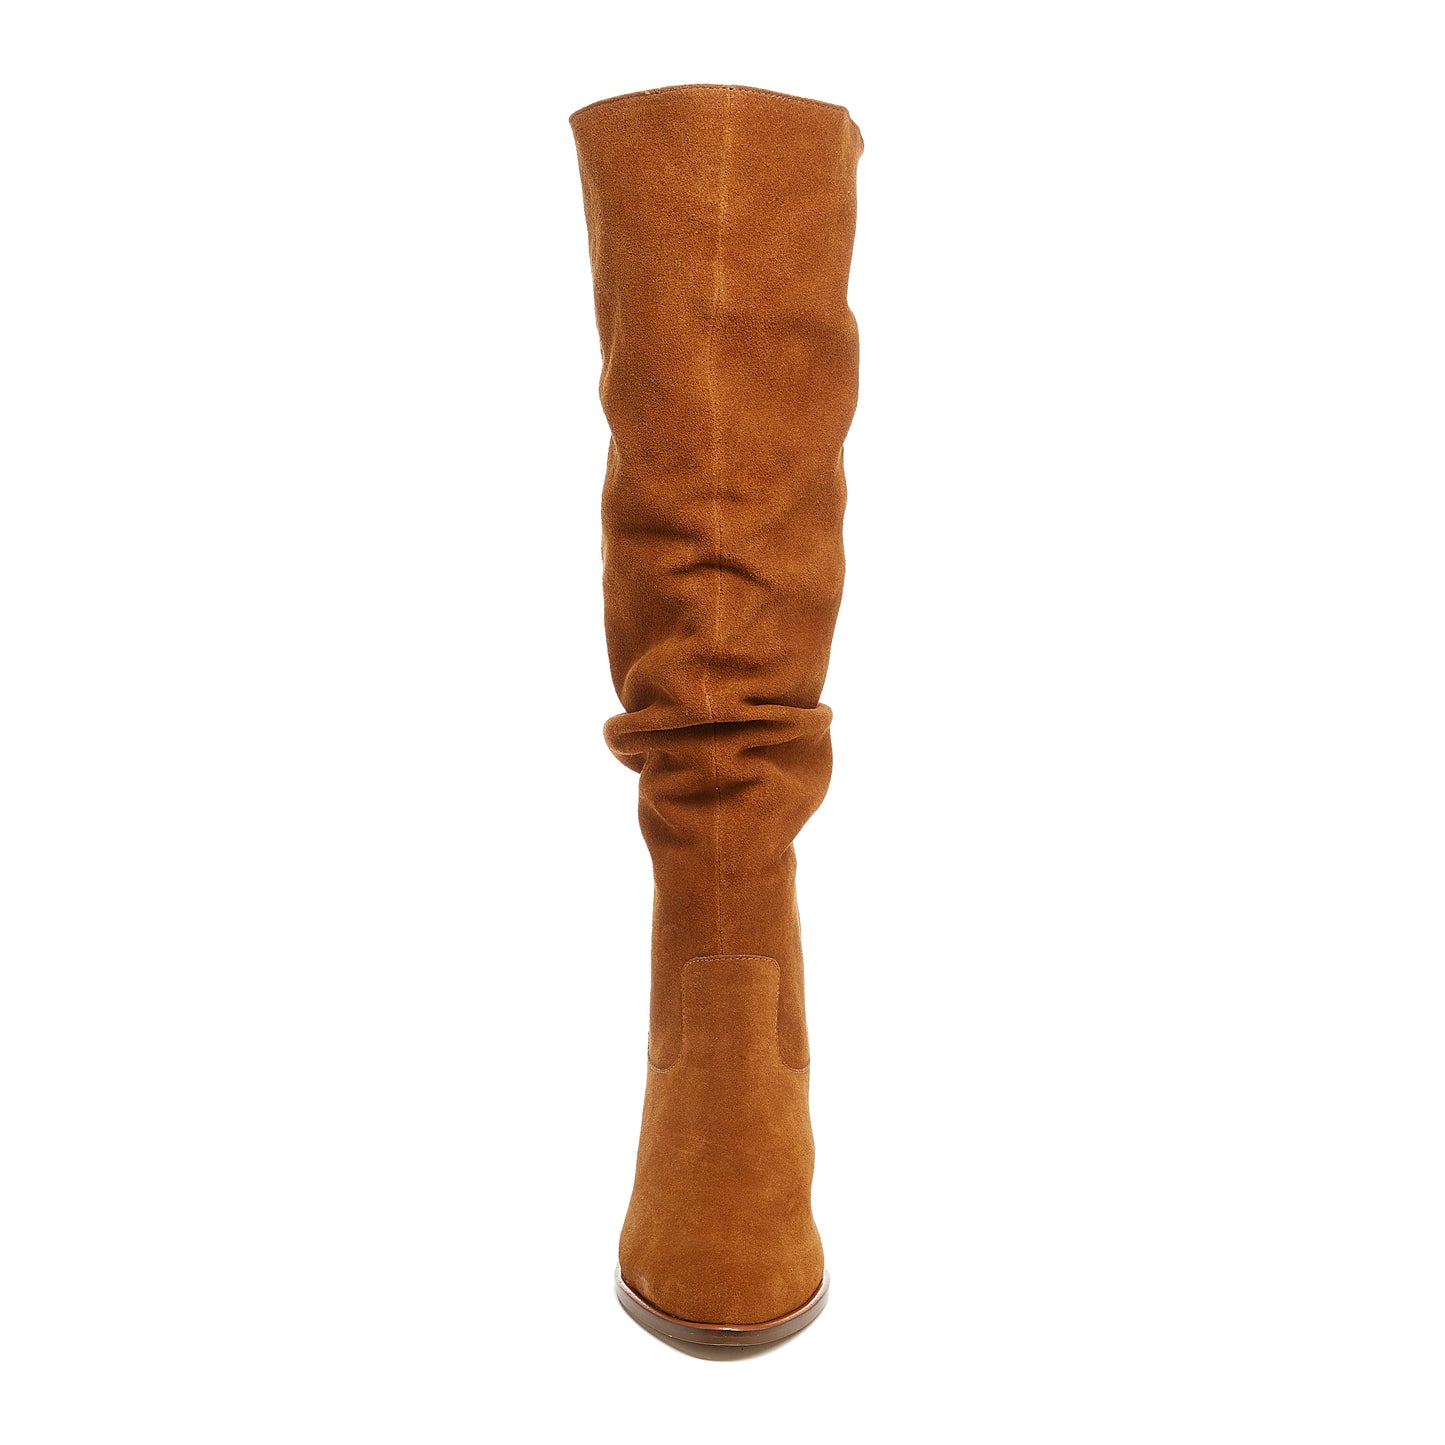 Women's Easton Cognac Suede Slouchy Boots by Kelsi Dagger BK®